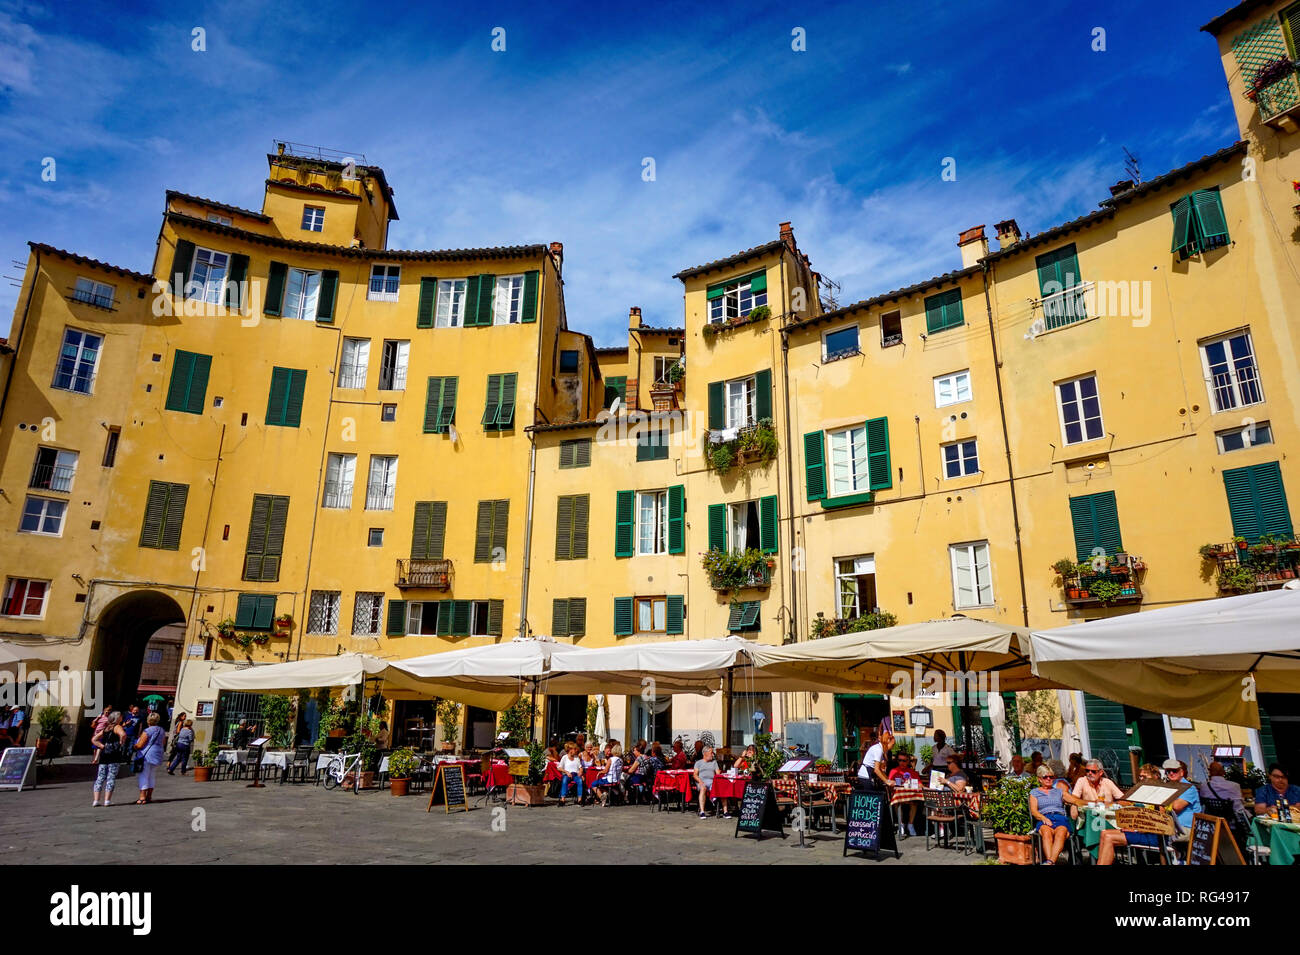 Lucca, Toscana / Italia - 09.15.2017: Persone a pranzo in ristoranti di la piazza dell'anfiteatro con davvero bella atmosfera storica Foto Stock